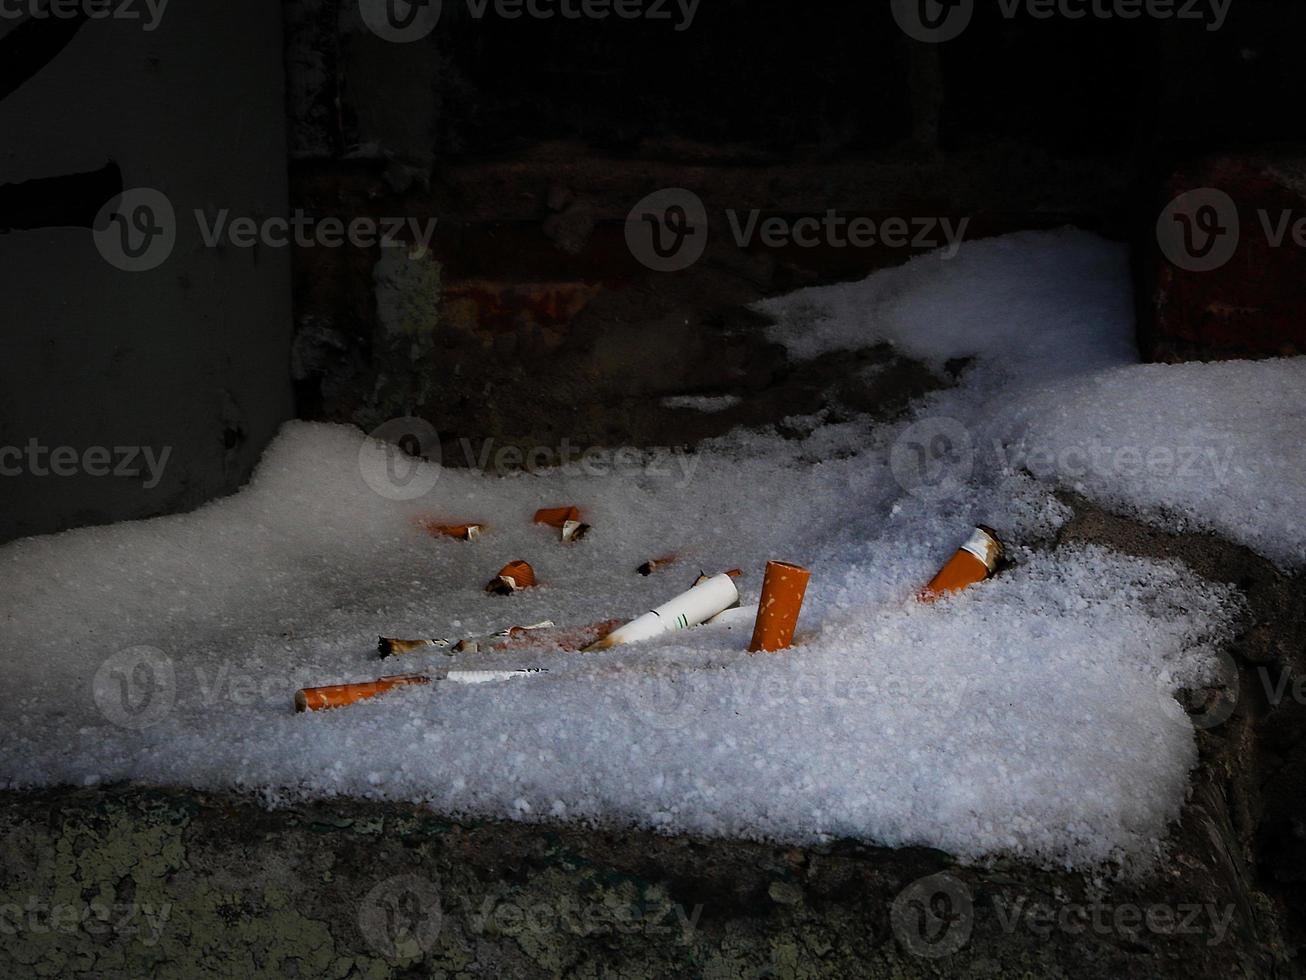 mozziconi di sigarette lasciati sulla neve nascosti in un angolo buio foto